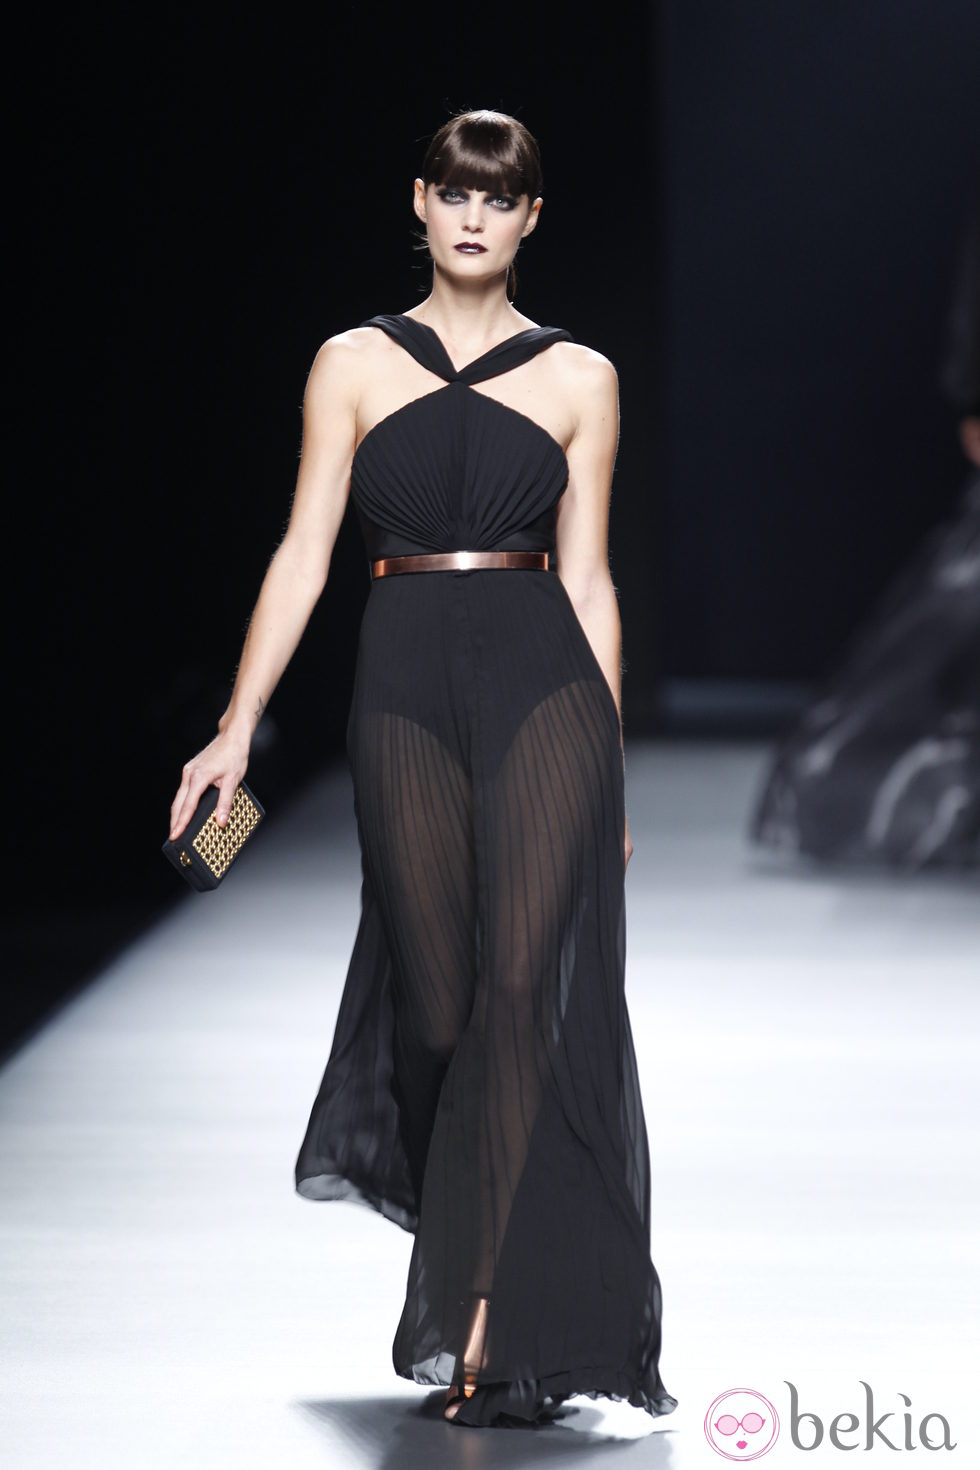 Vestido negro transparente con vuelo de la colección primavera-verano 2013 de Juanjo Oliva